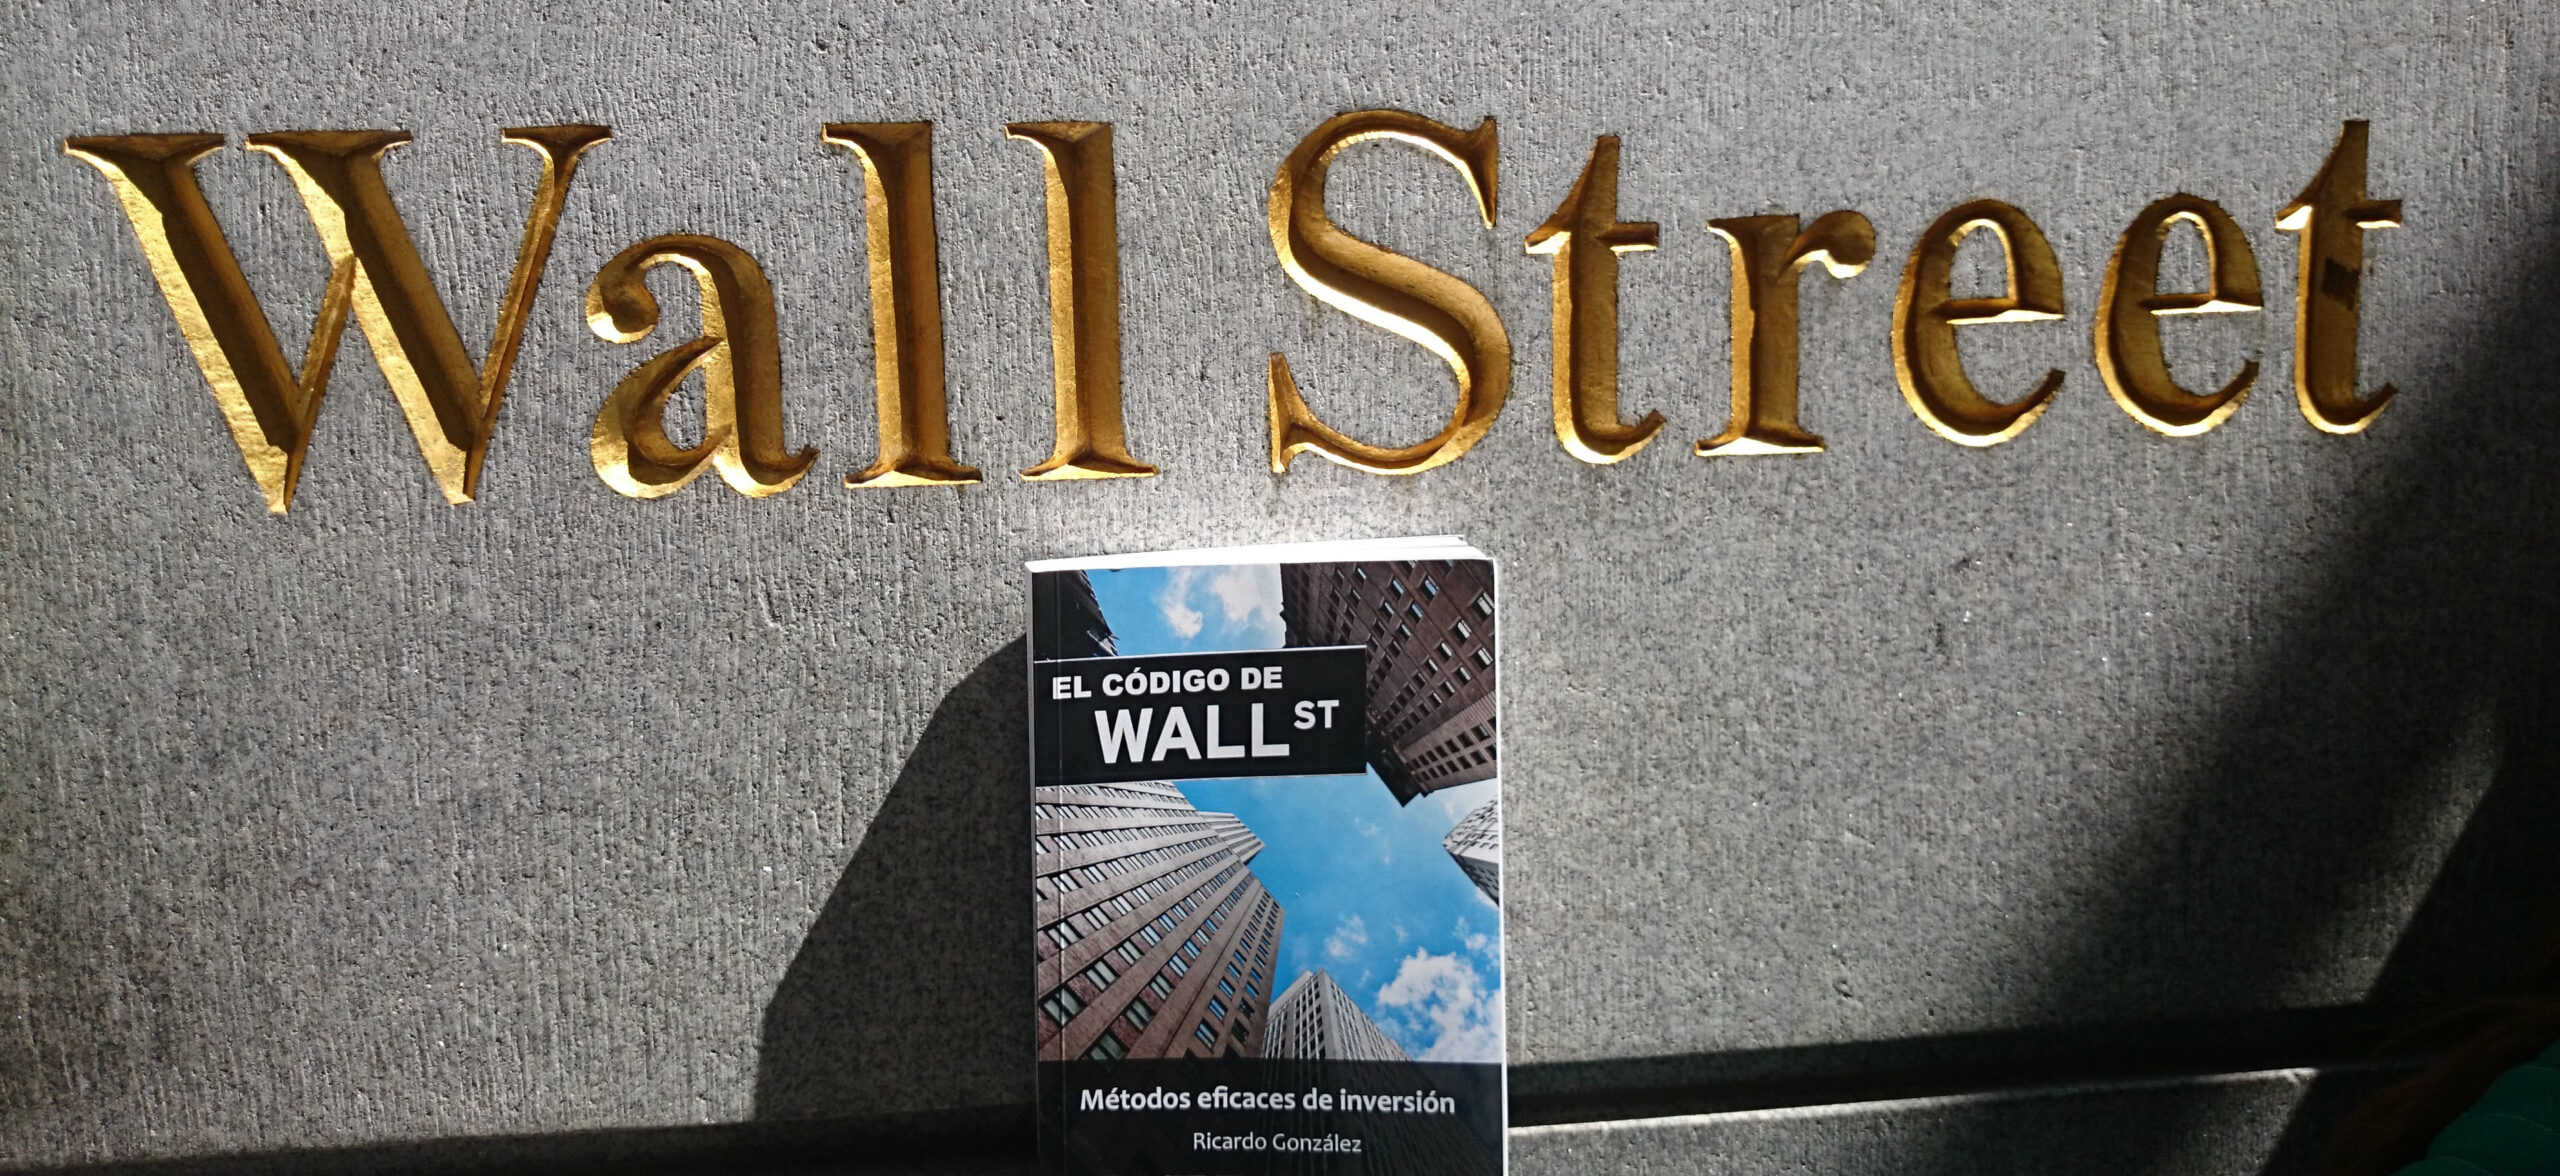 Estas navidades regala El código de Wall Street